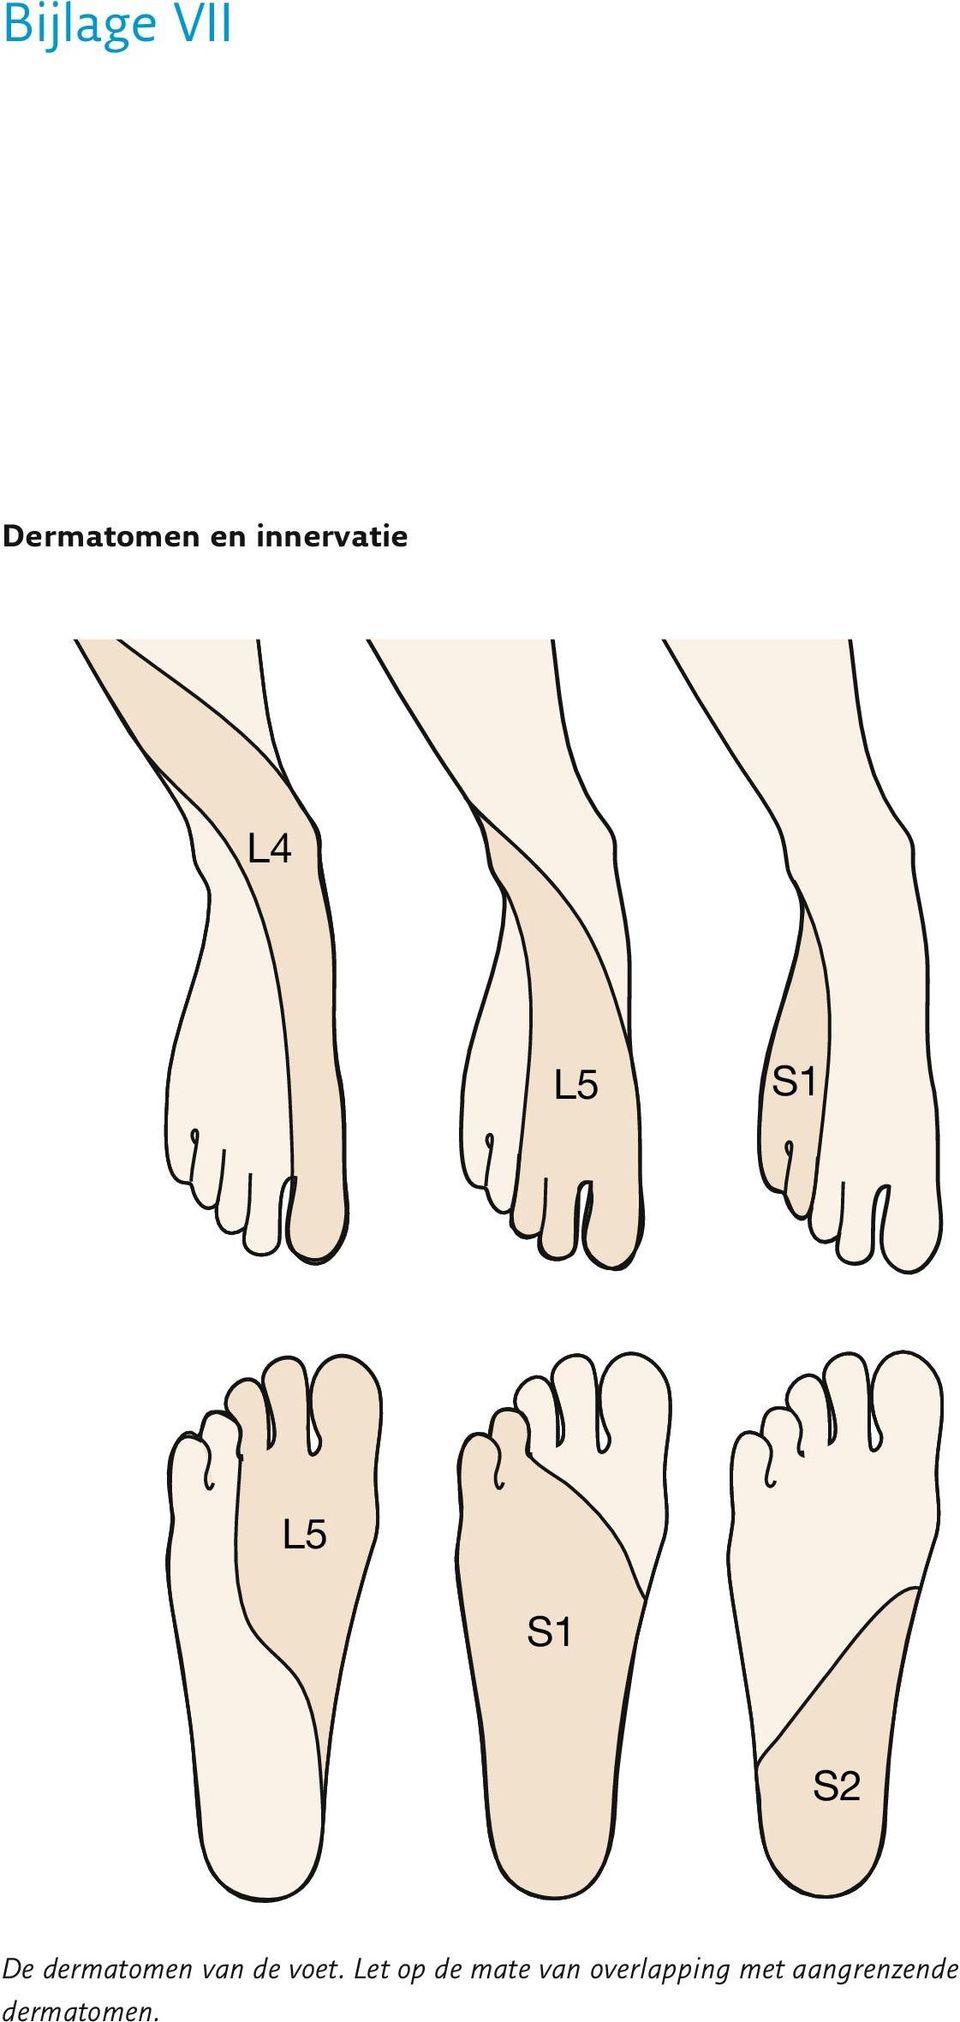 dermatomen van de voet.